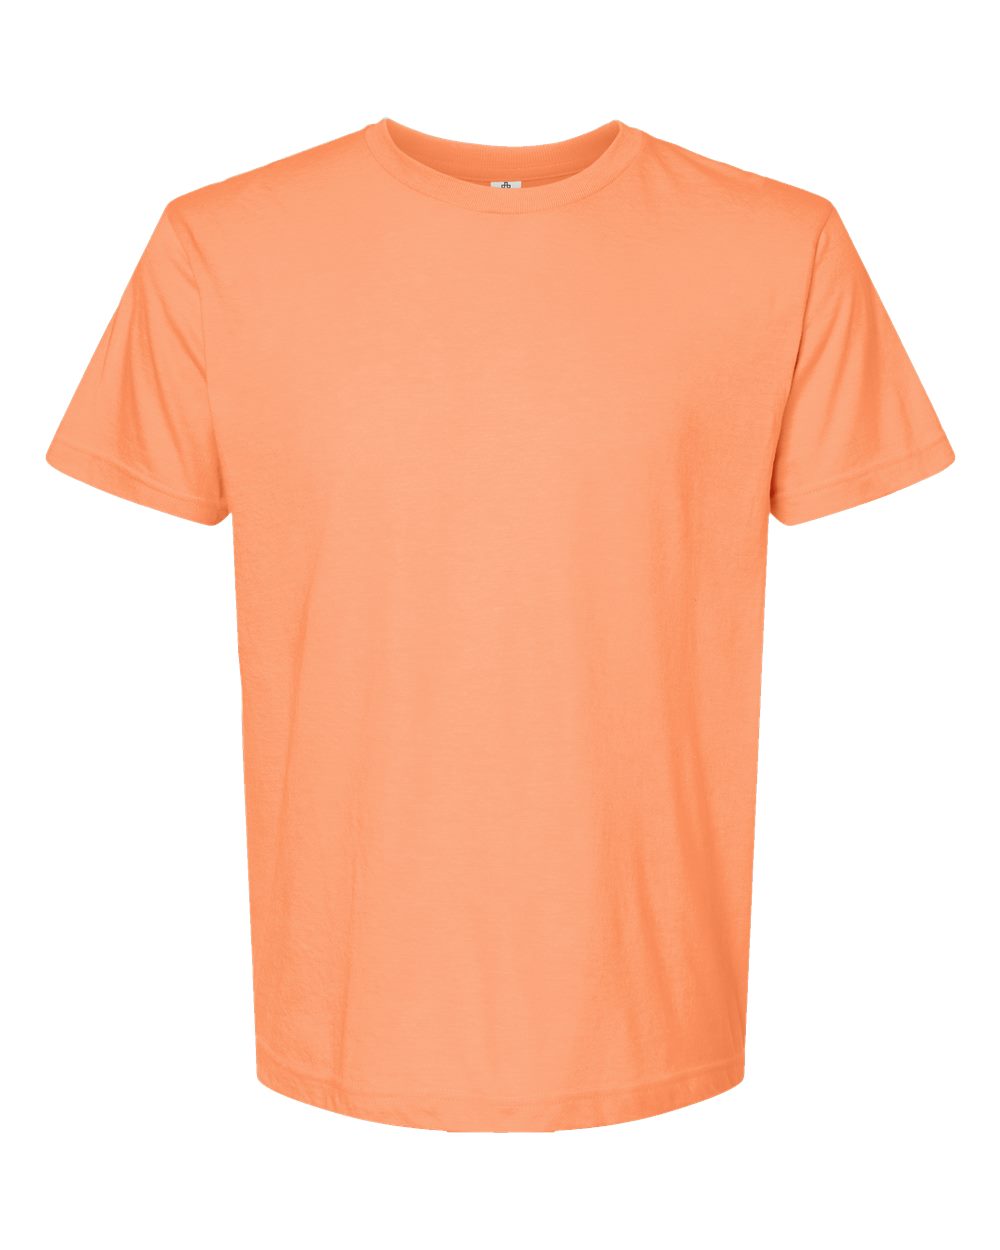 Tultex 202 Adult Shirt - XXXL